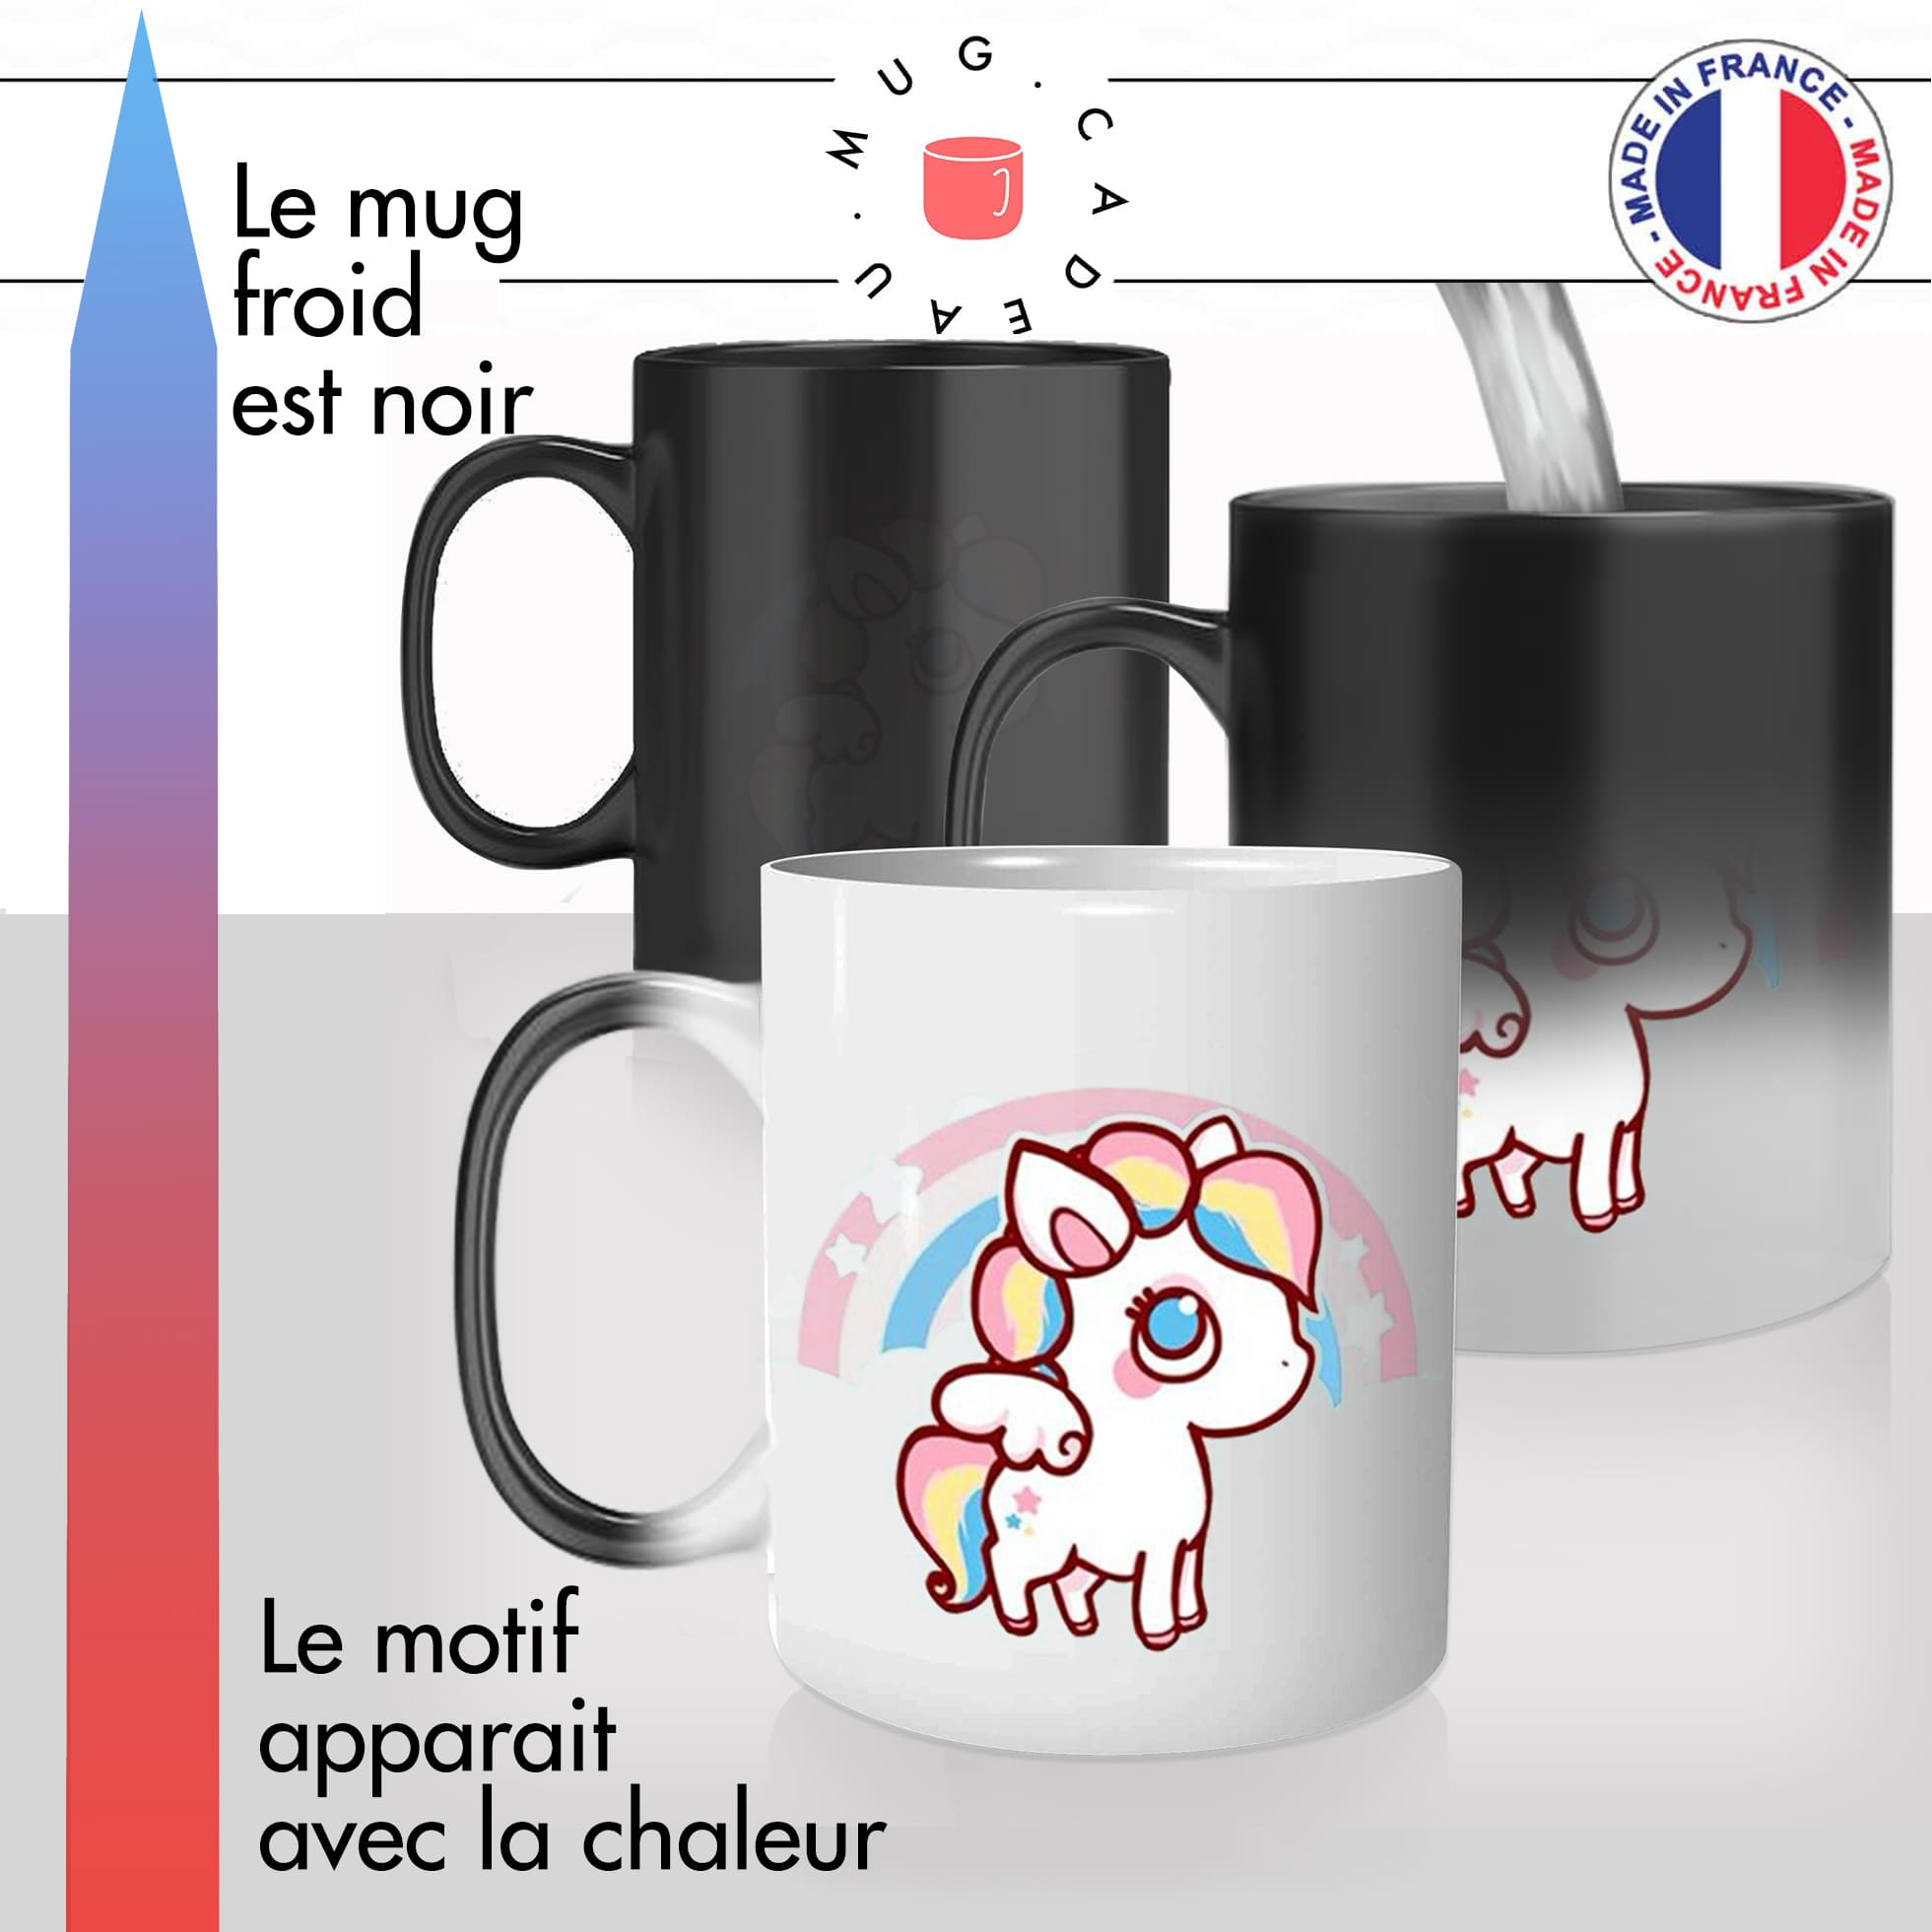 mug magique thermoreactif thermochauffant personnalisé licorne mignonne dessin personnalisable idée cadeau fun